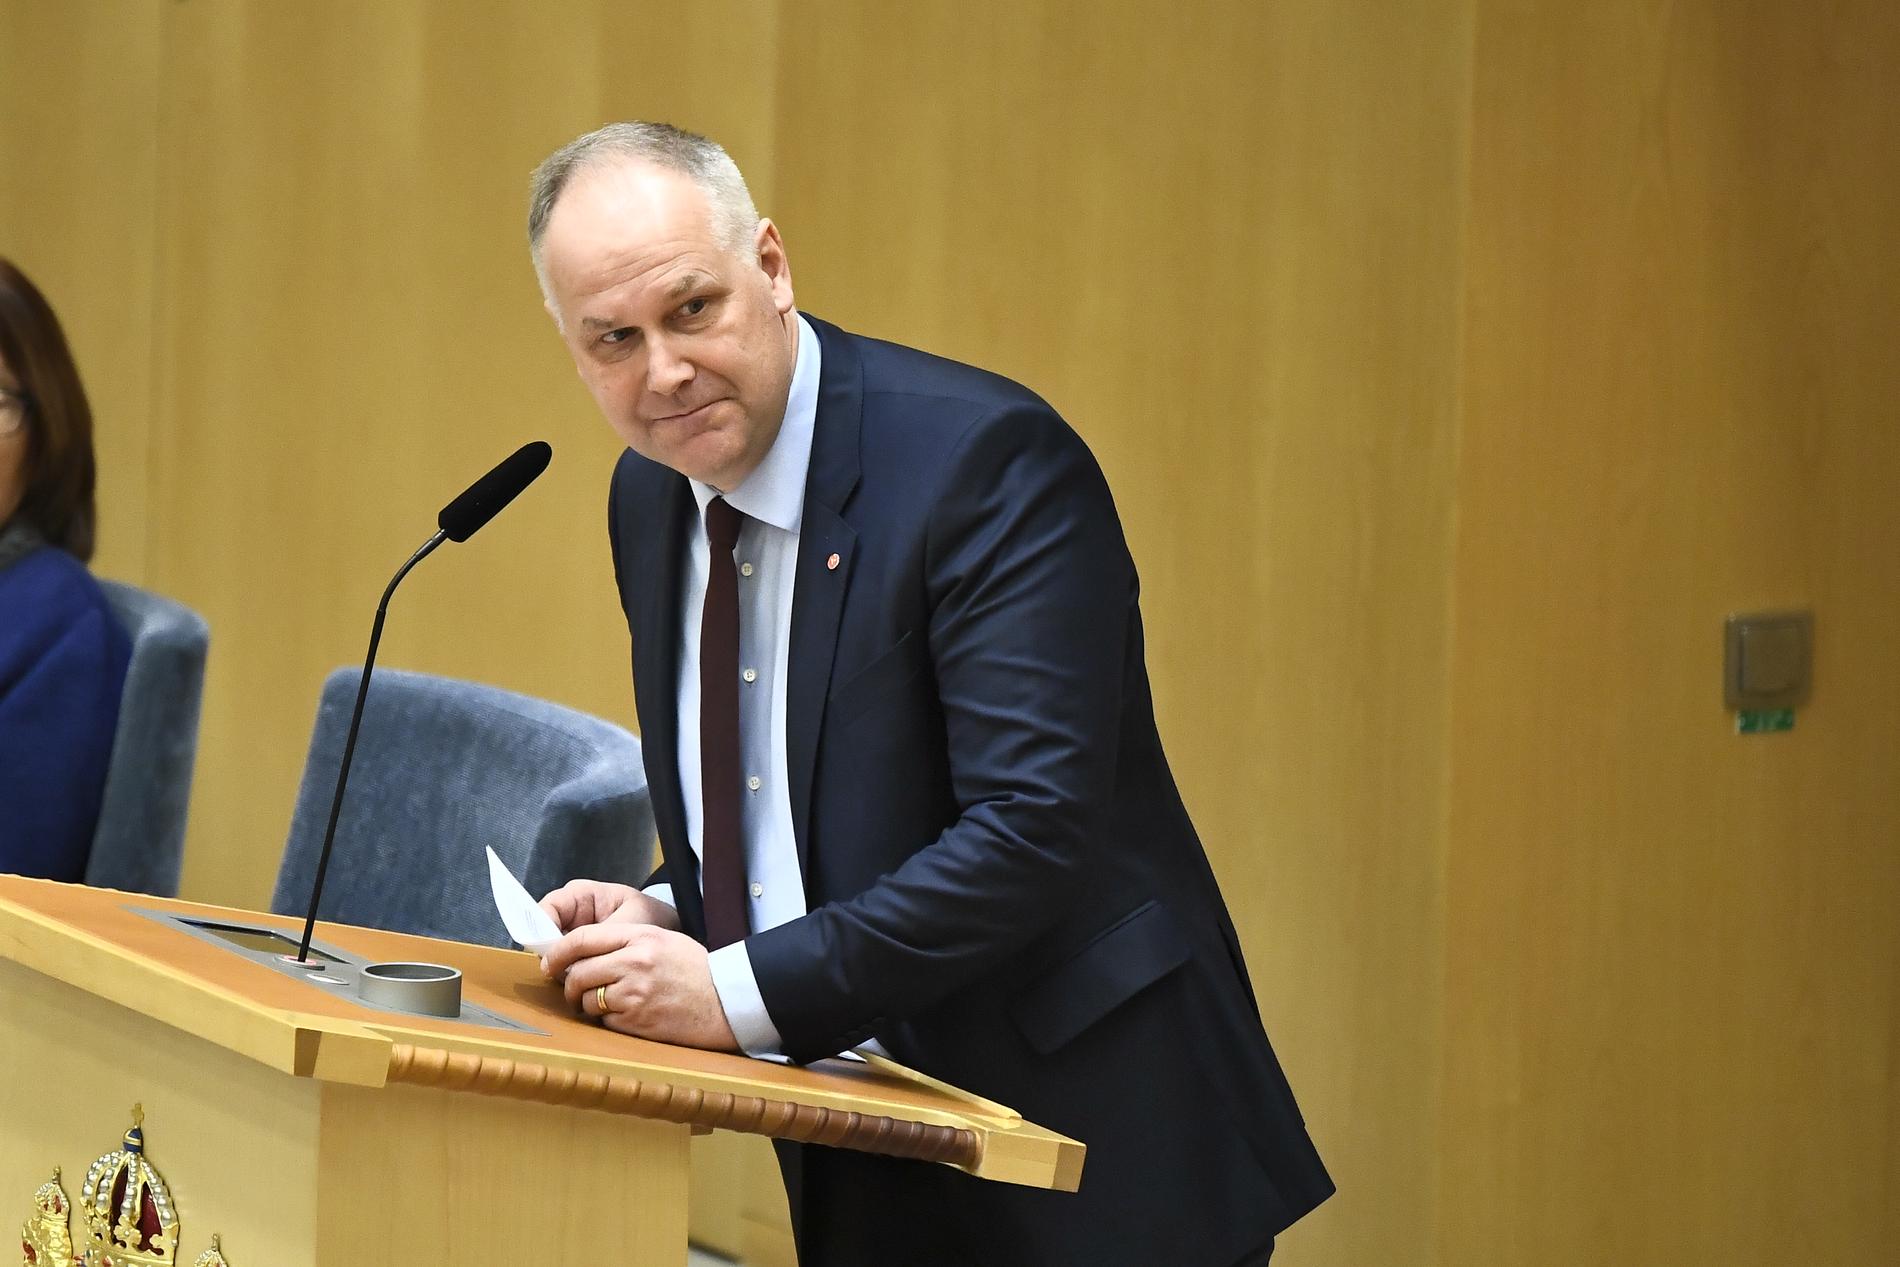 Vänsterpartiets partiledare Jonas Sjöstedt sträcker ut en hand till M och KD om att stoppa en höjning av EU-avgiften.